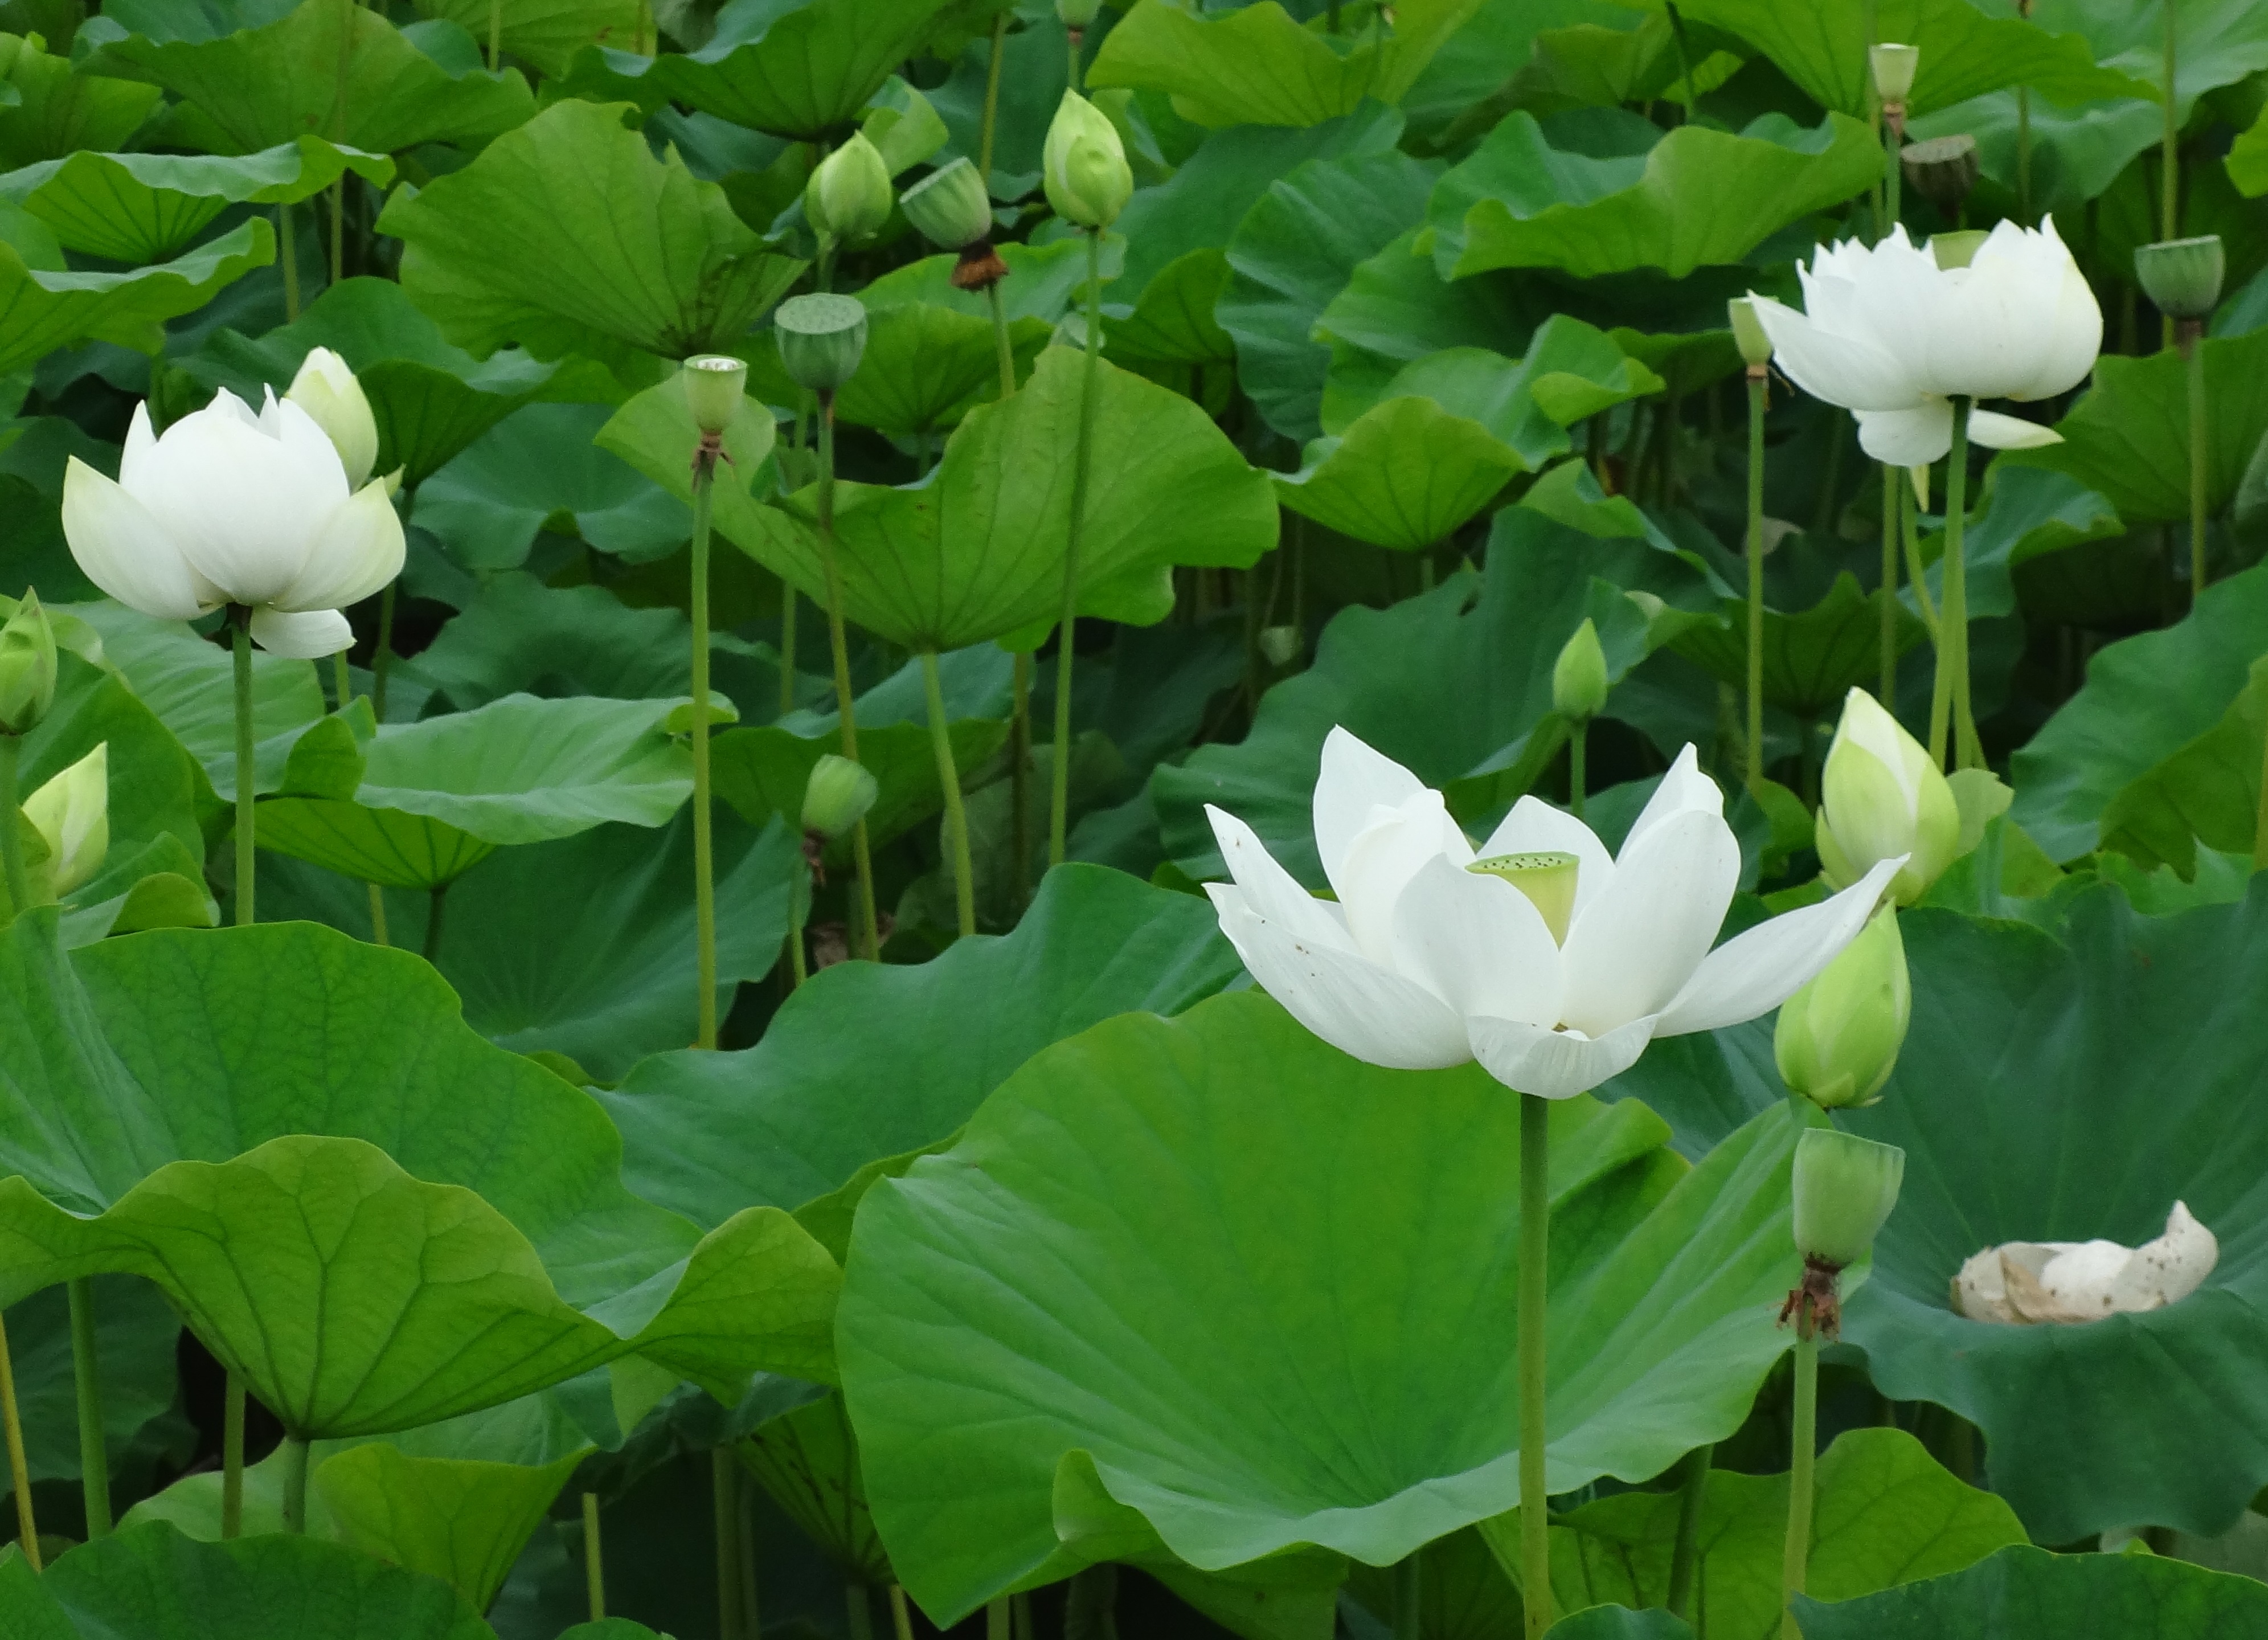 ため池に白い蓮の花が咲いた 塩田まちづくり協議会